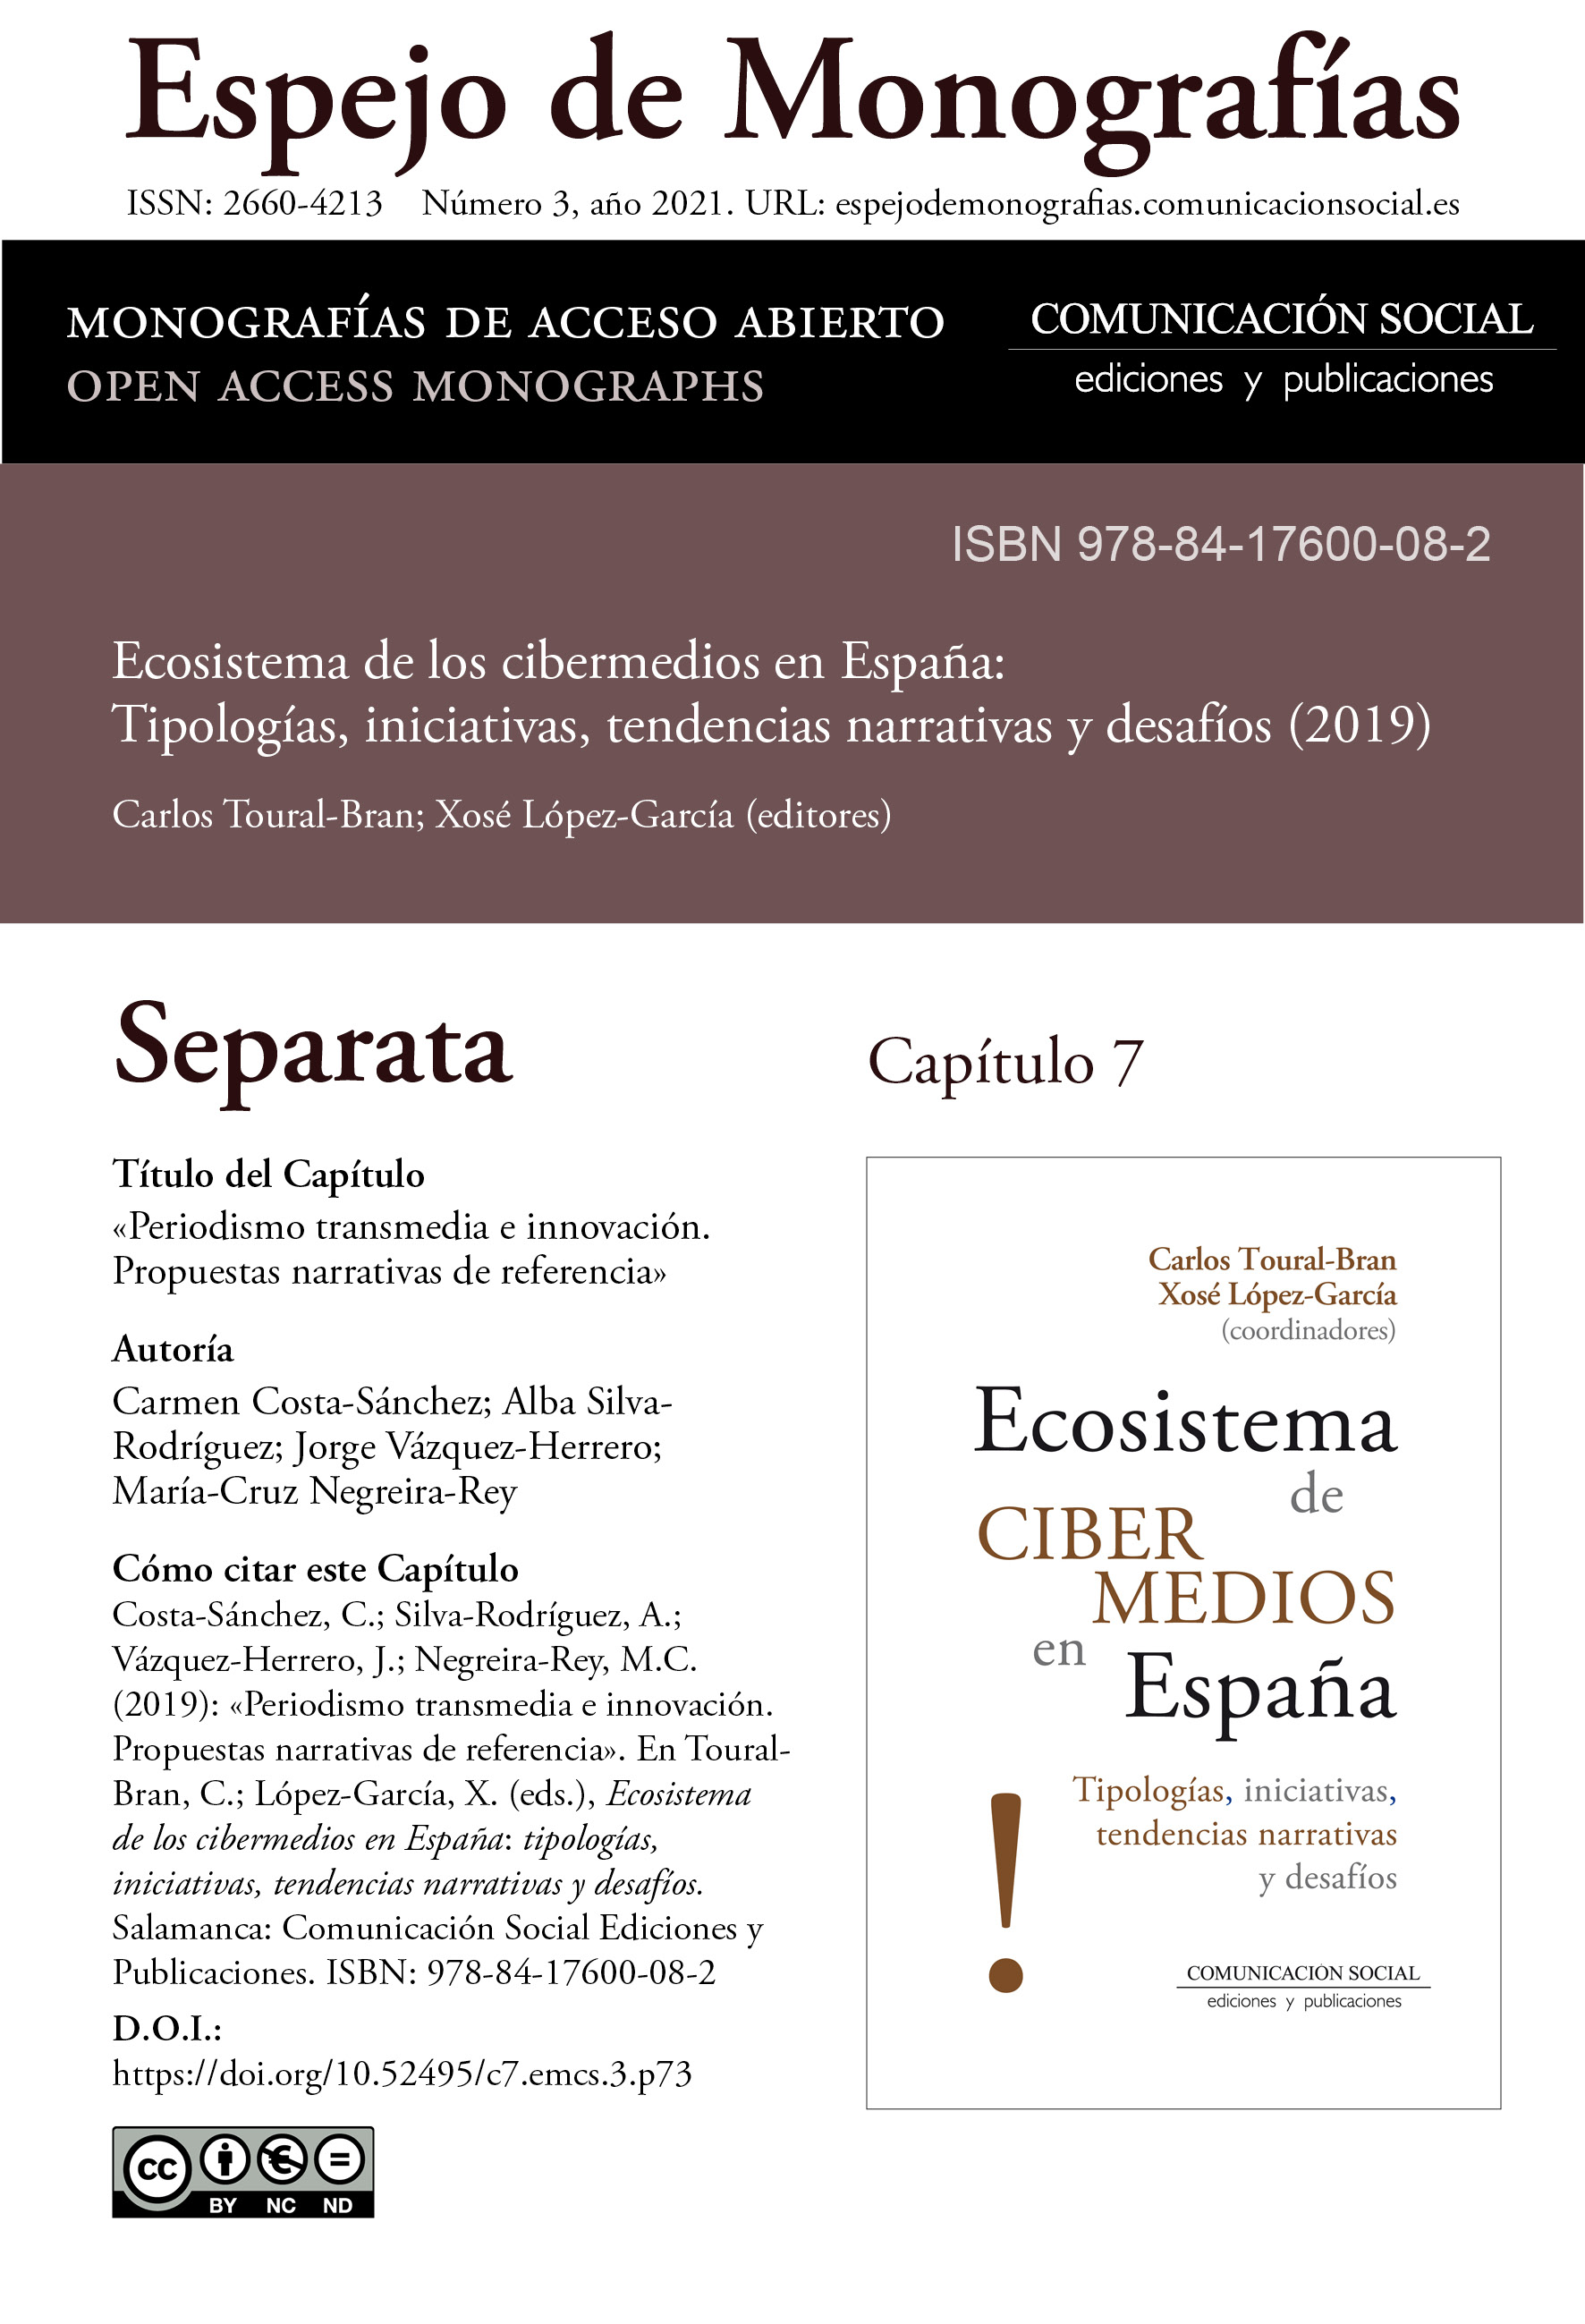 Separata del Capítulo 7 correspondiente a la monografía Ecosistema de cibermedios en España